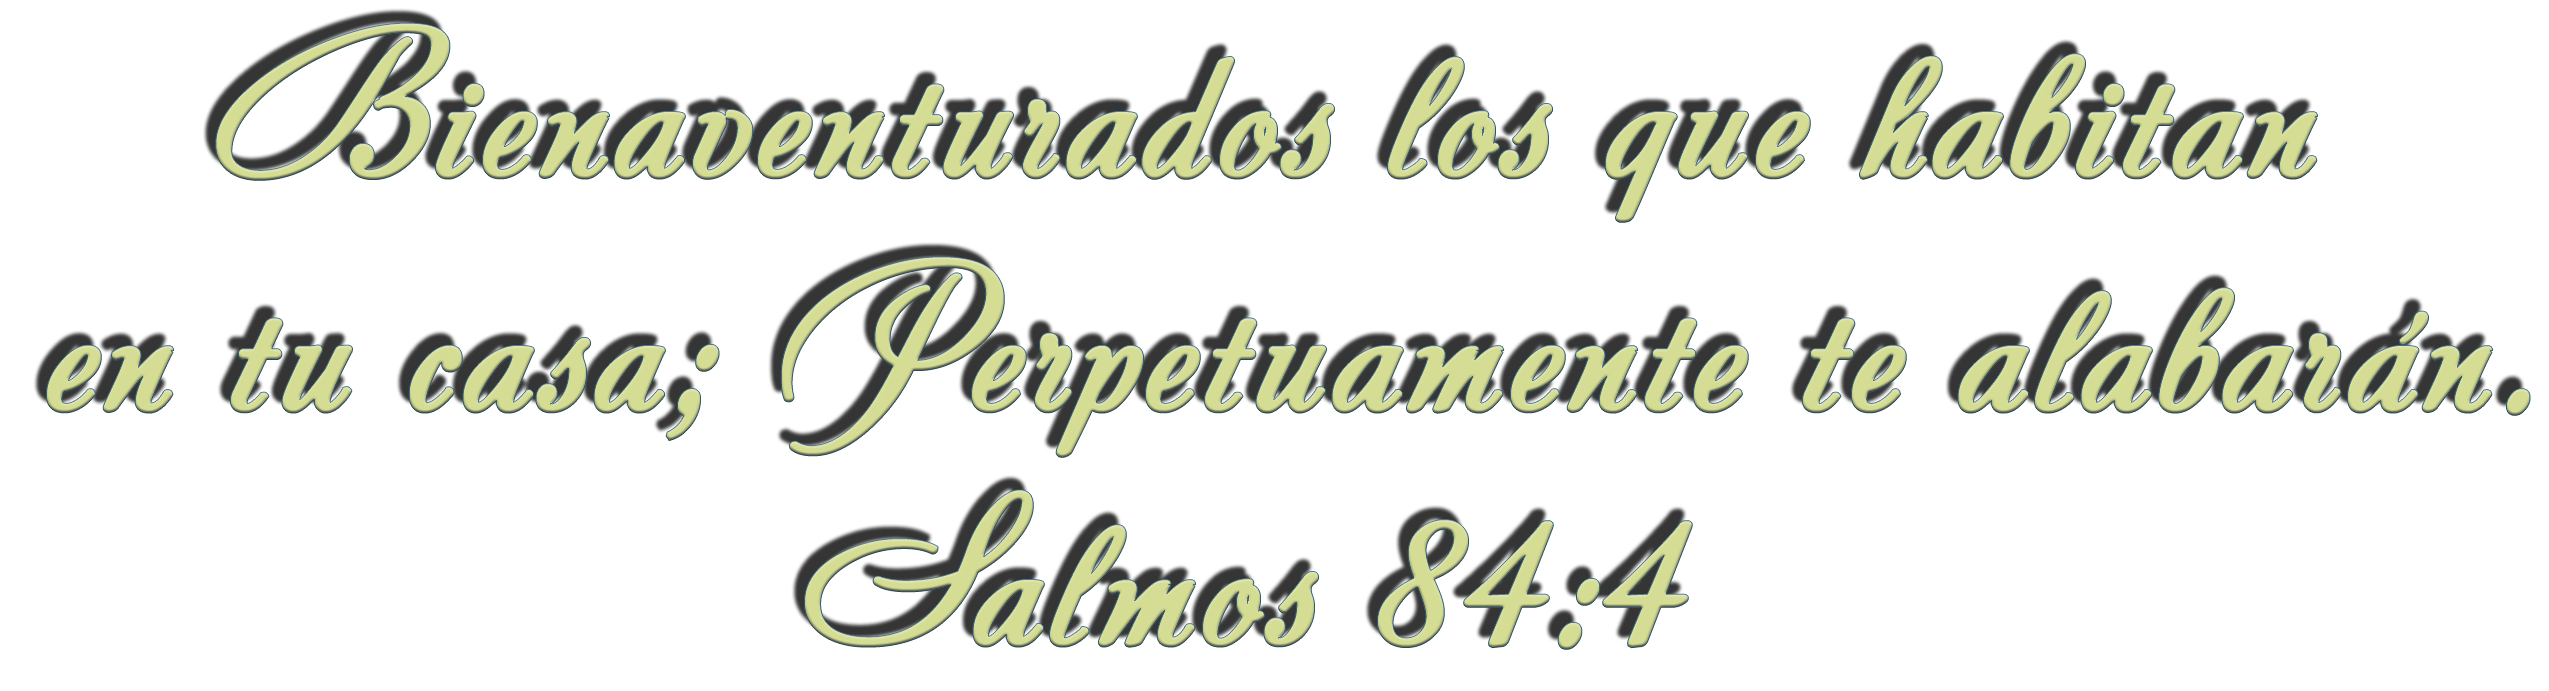 Salmos 84:4